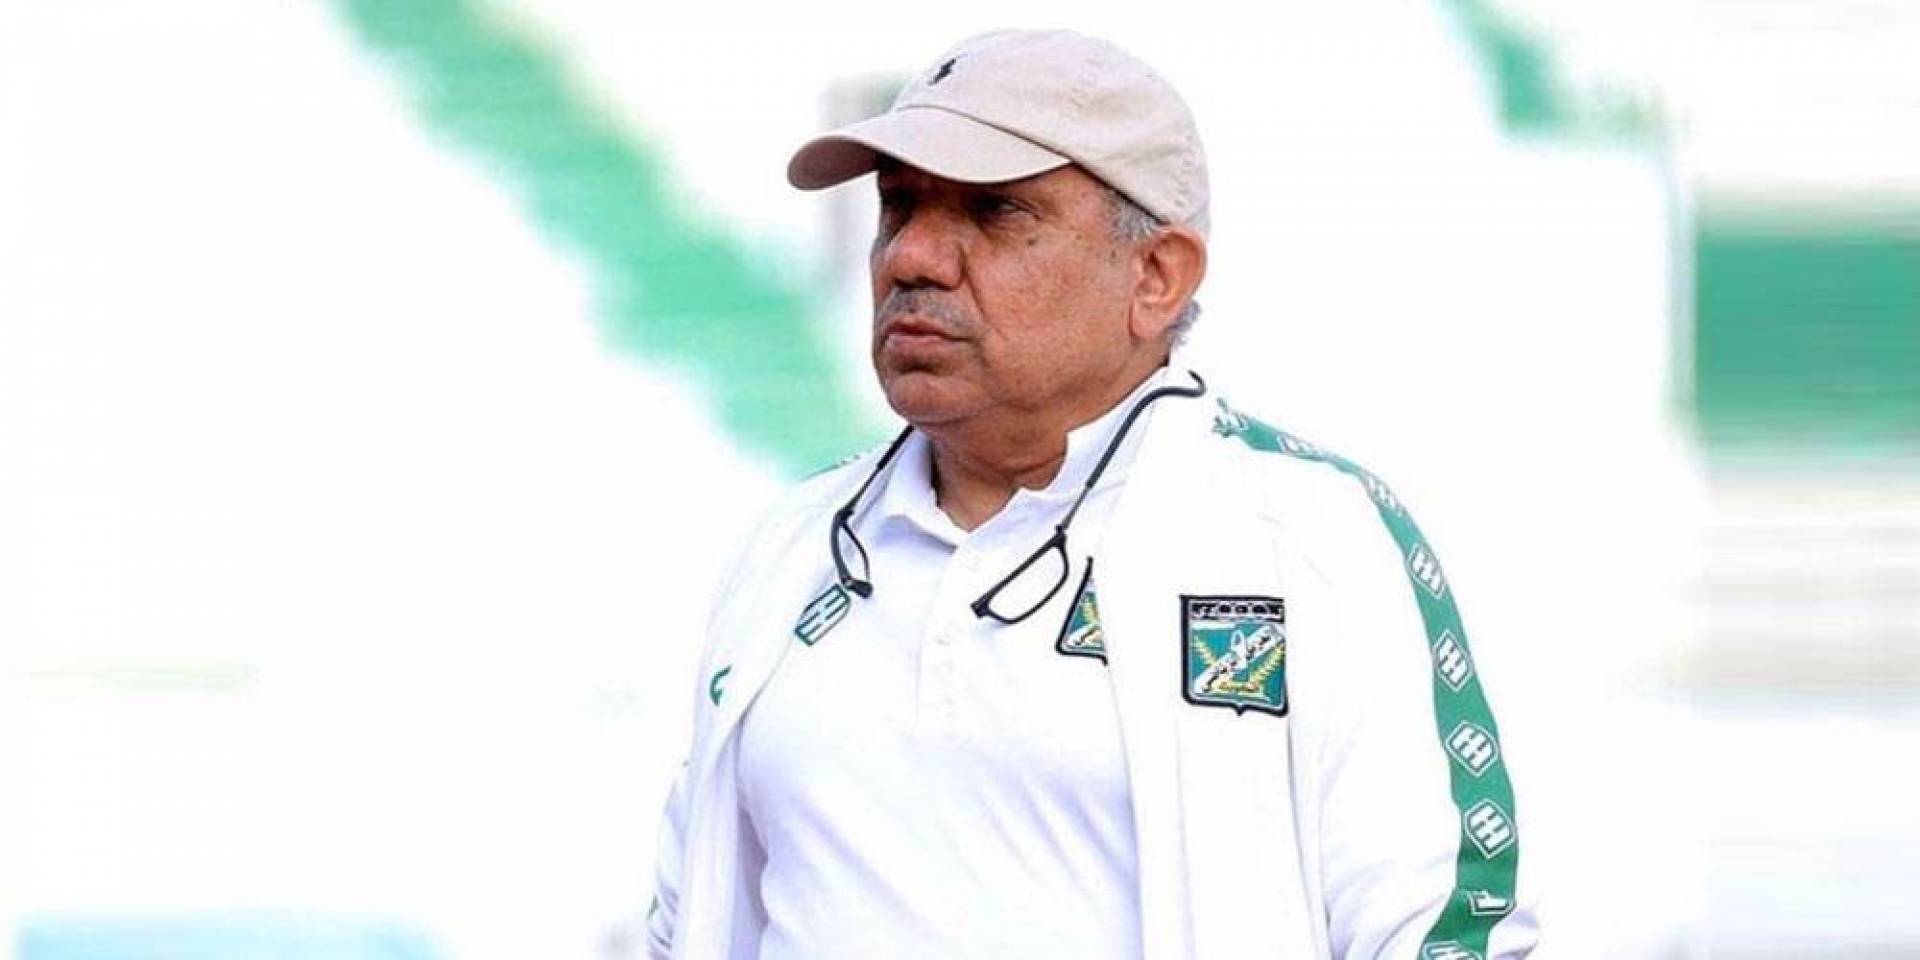 النادي العربي يعلن إصابة رئيس جهاز كرة القدم علي مندني بـ«كورونا»   